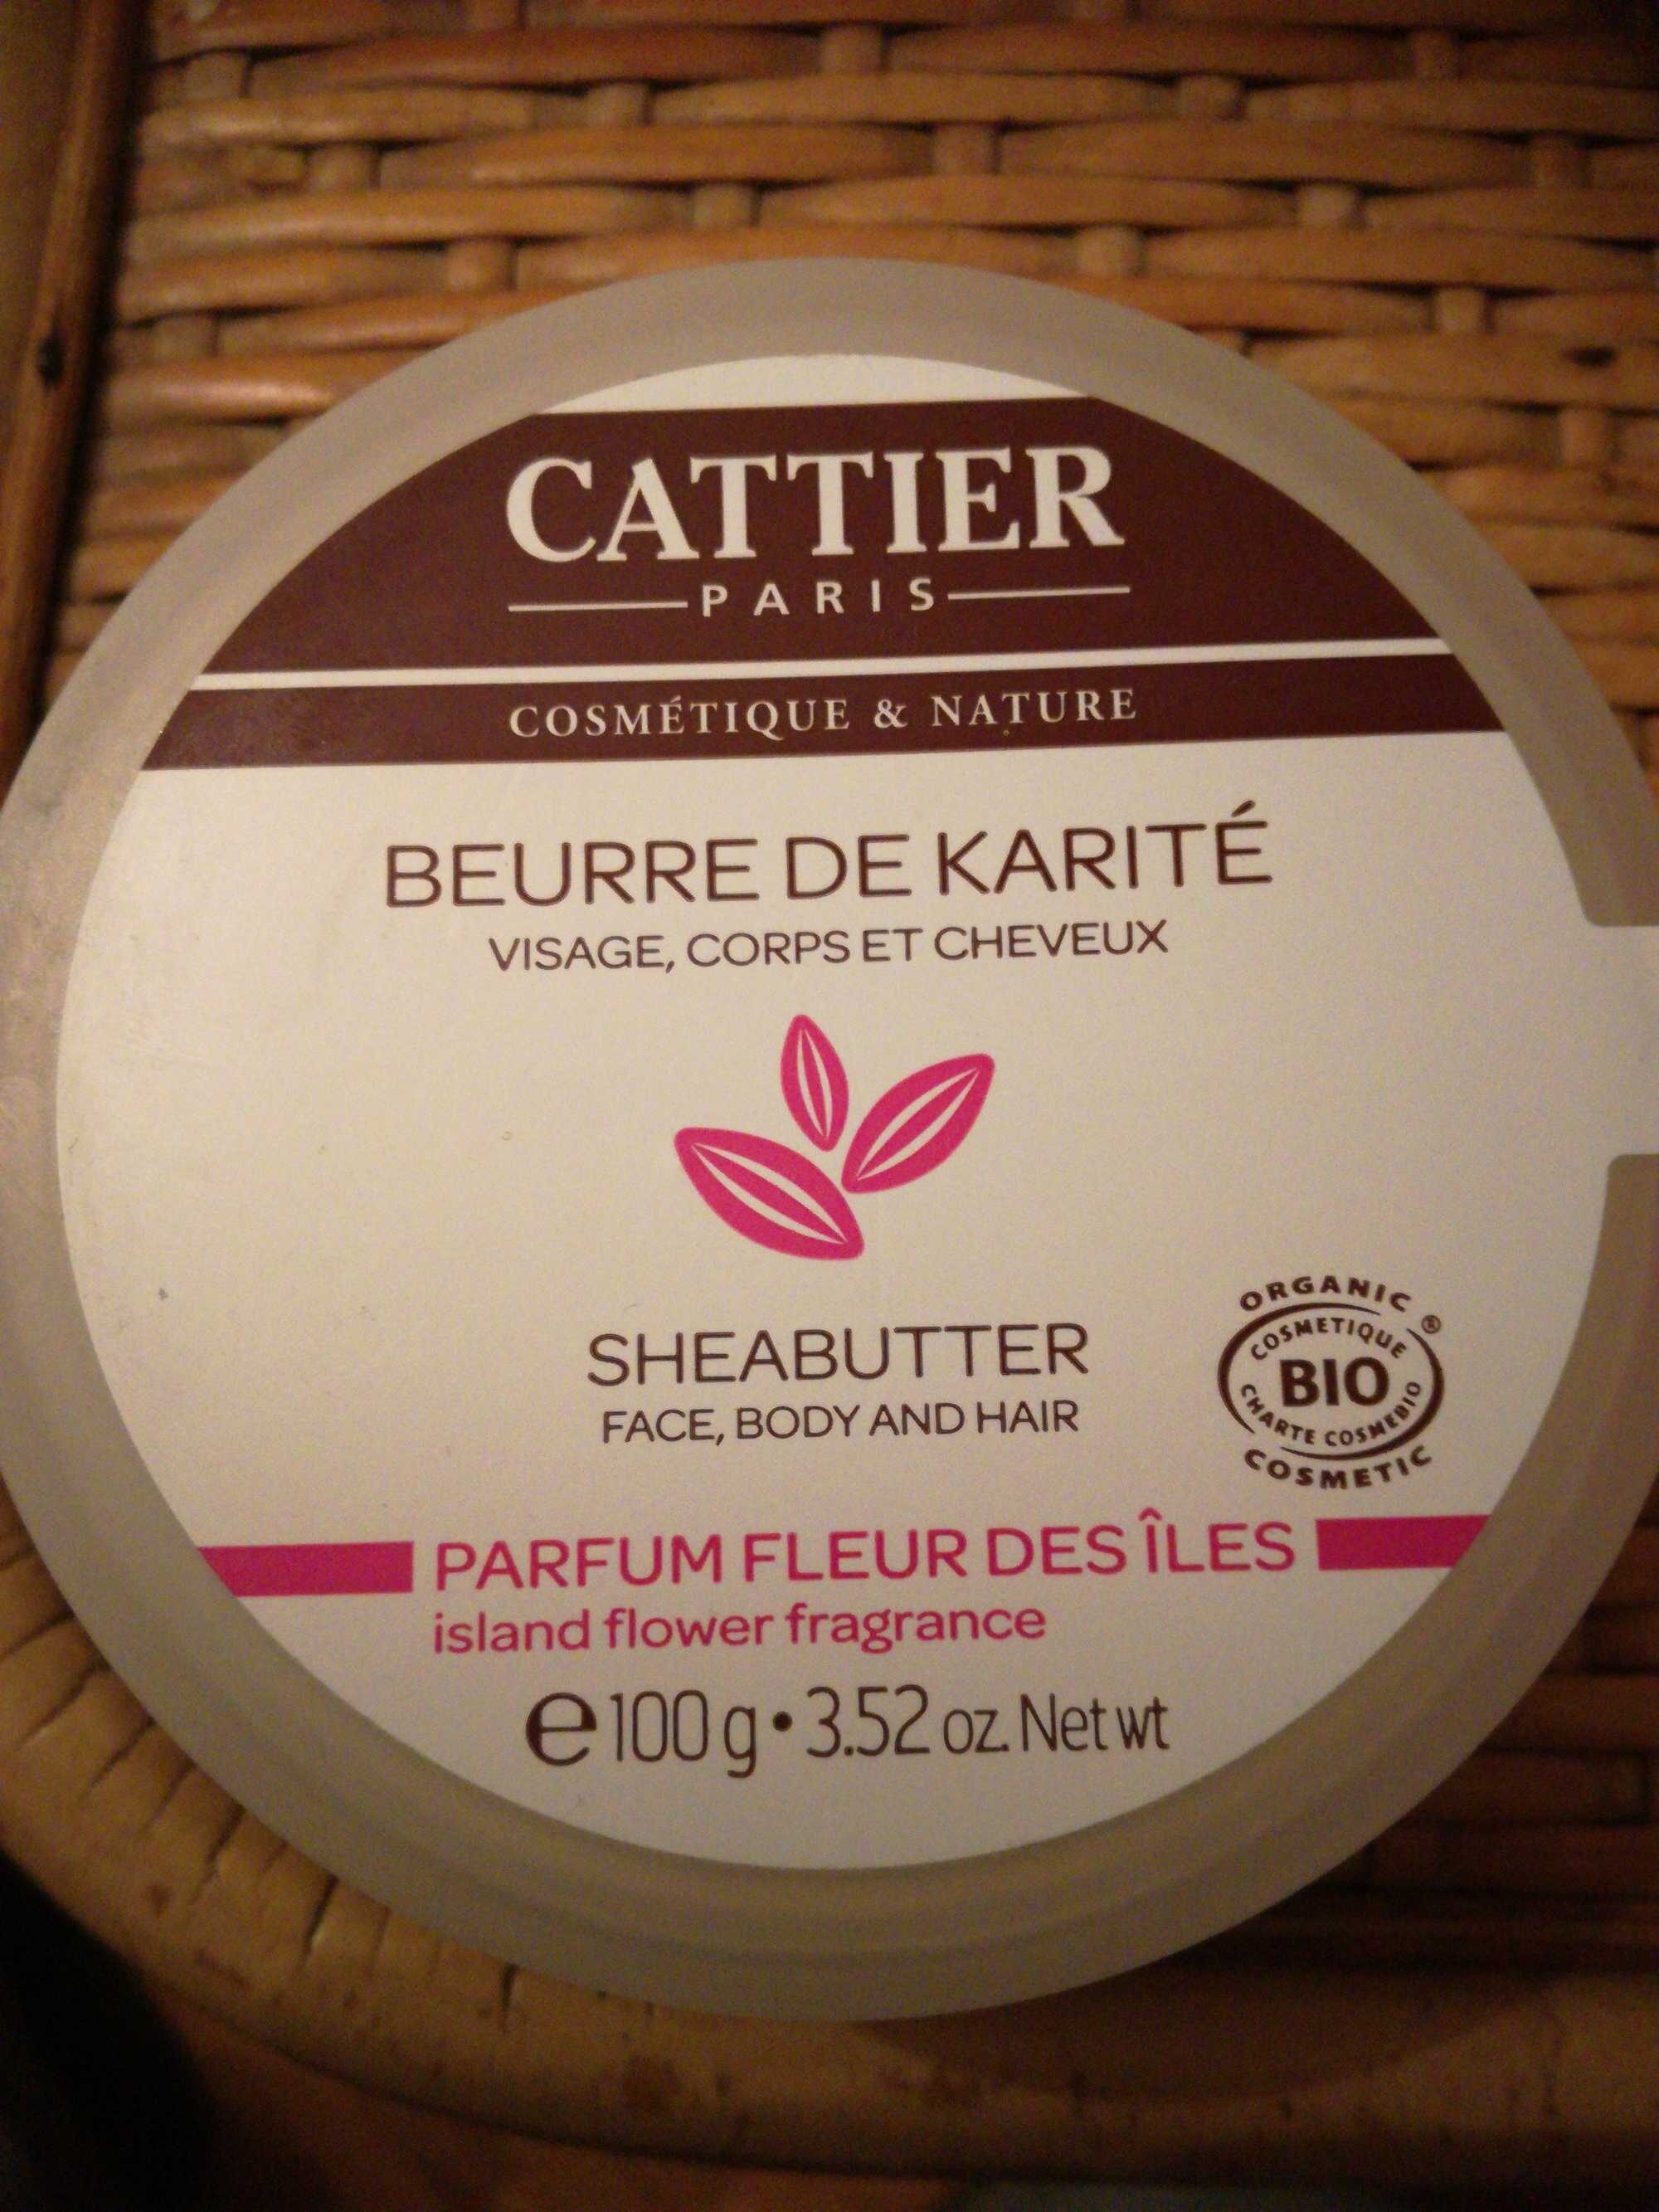 Beurre de karité parfum fleur des îles - Produto - fr